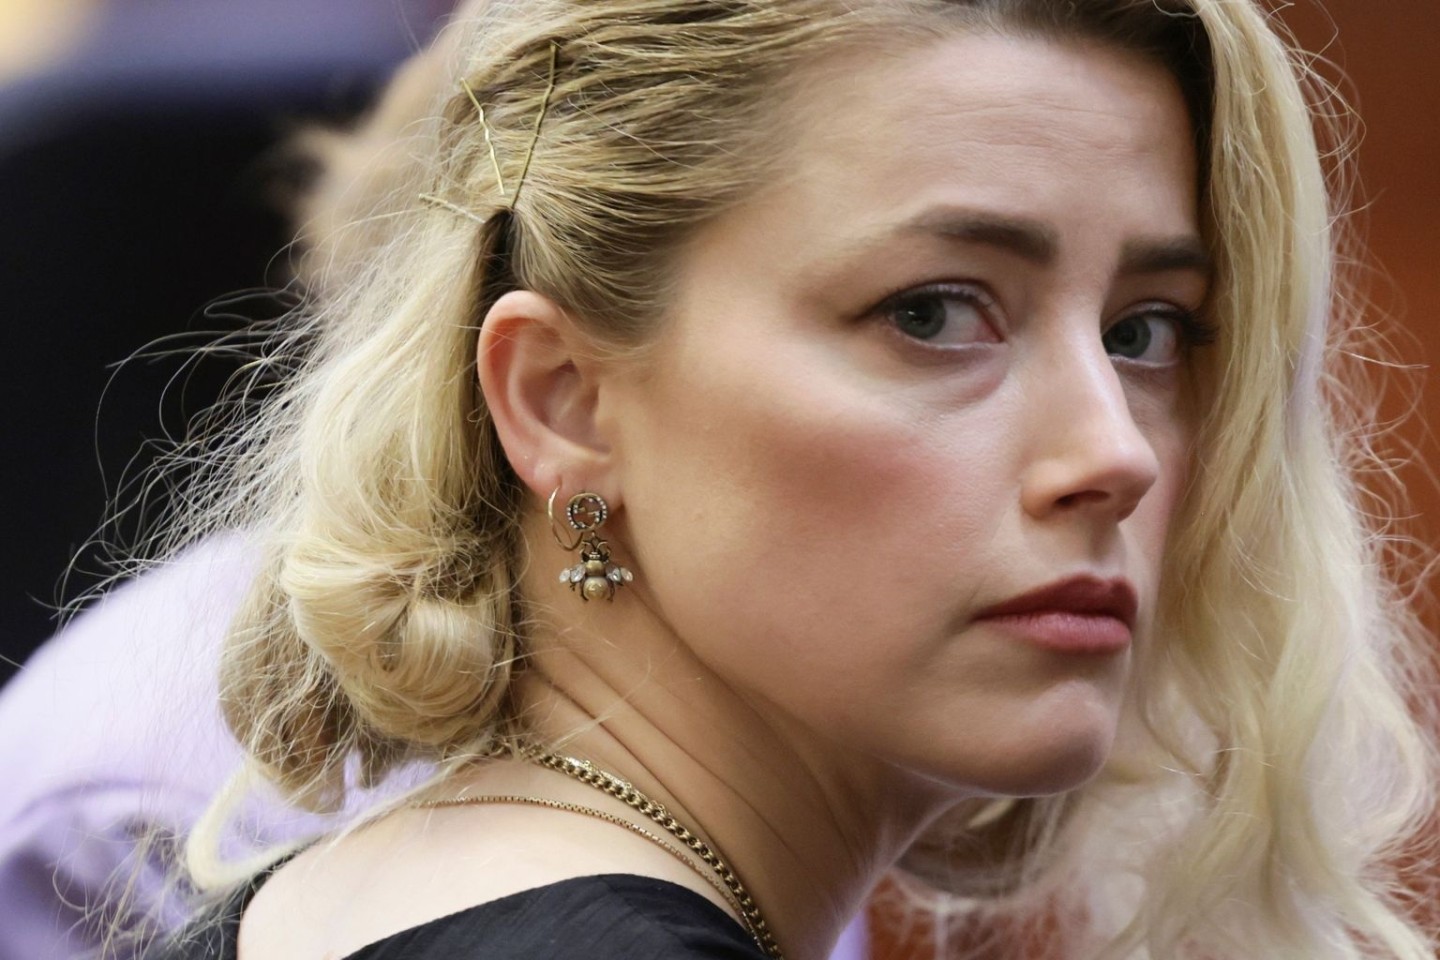 Eine weitere Runde Heard vs. Depp: Amber Heard will das Urteil im Prozess gegen Johnny Depp anfechten.